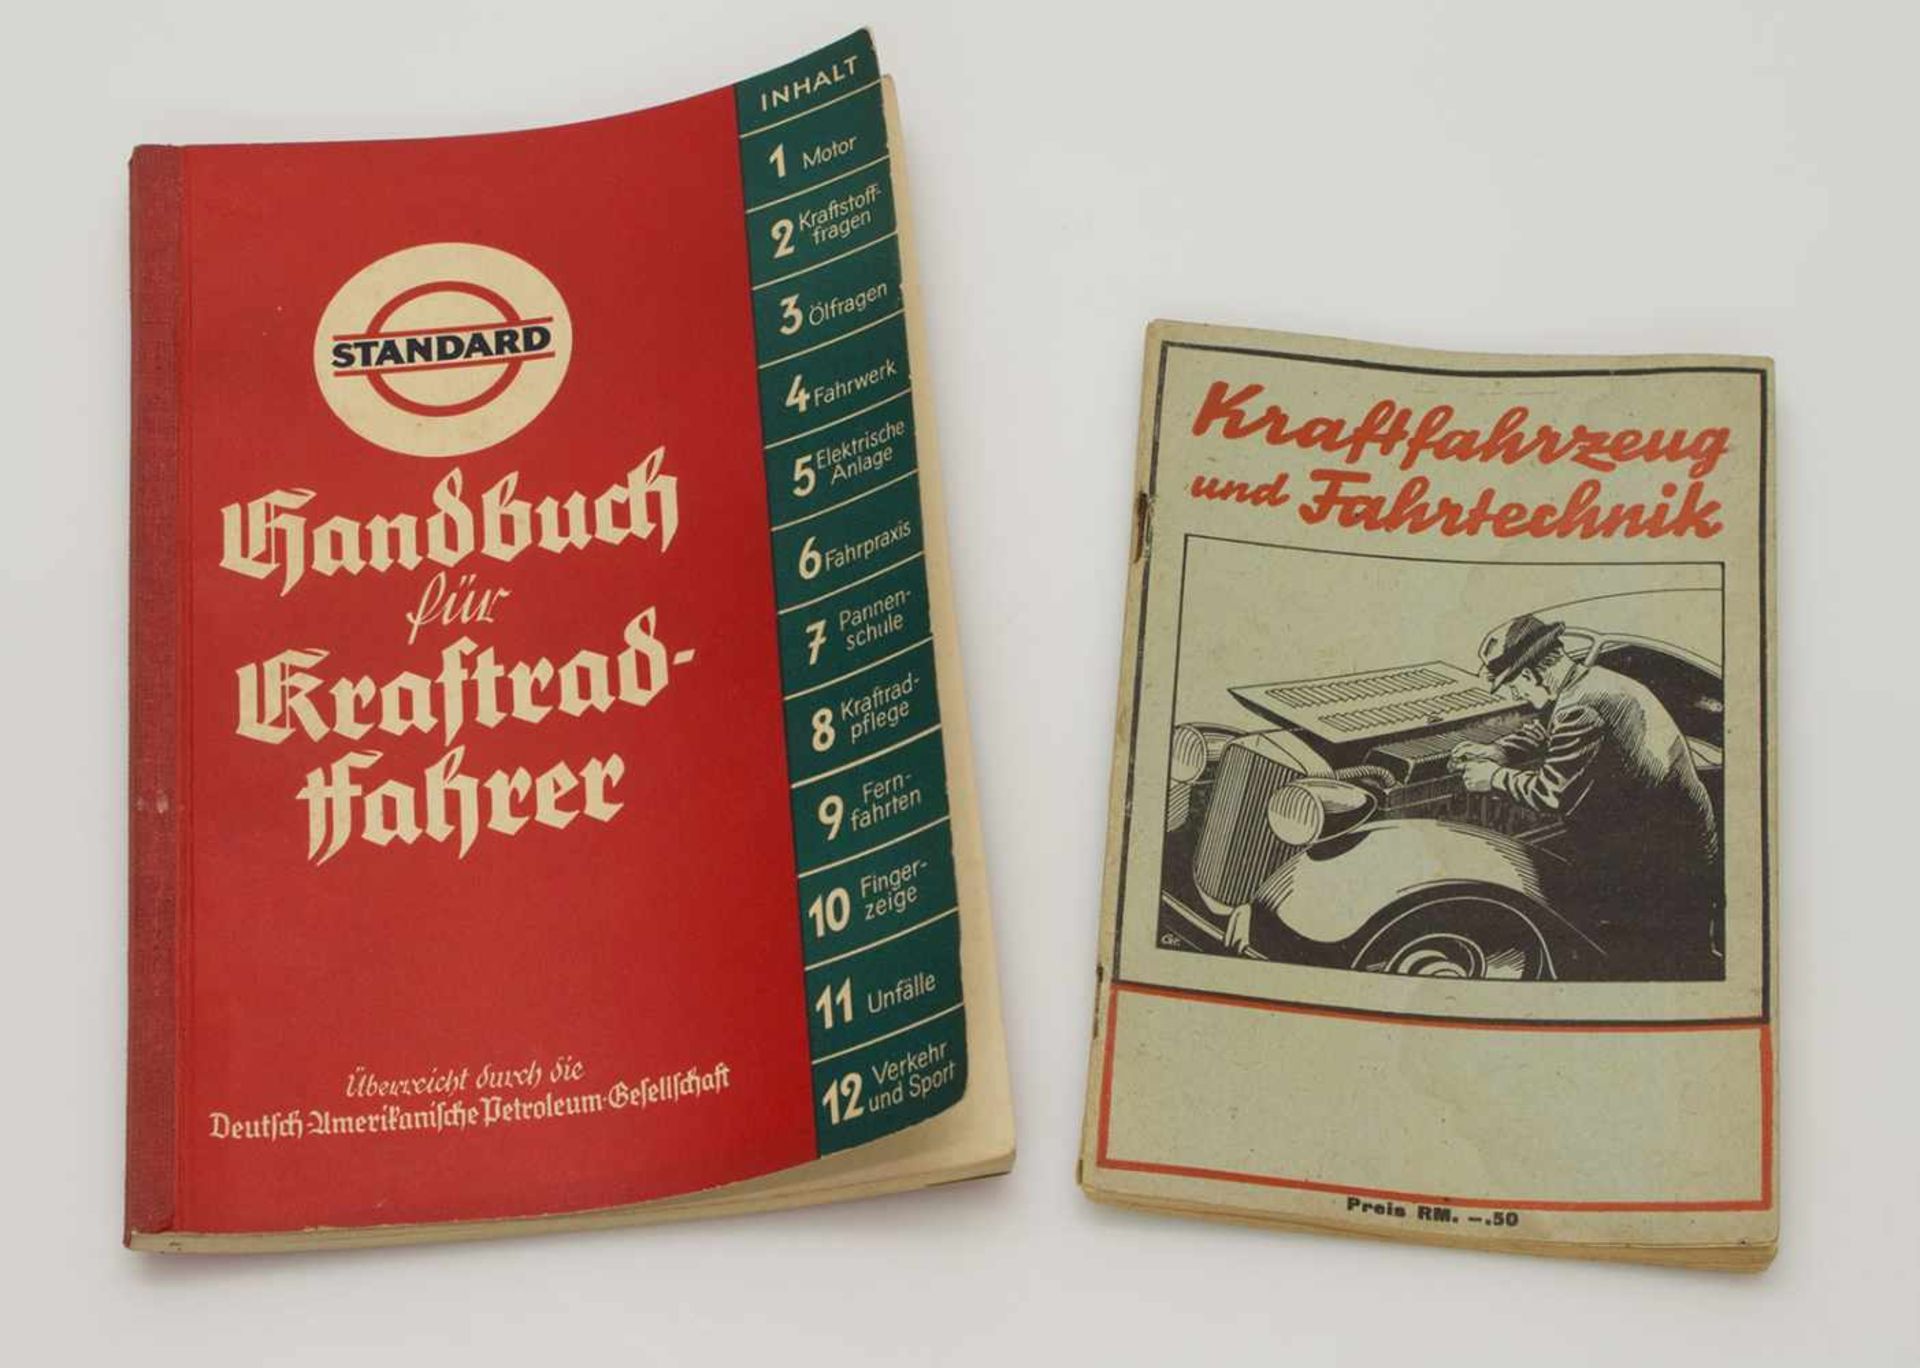 LotKraftfahrzeug und Fahrtechnik Schmidt & Co. Berlin 1944 u. Handbuch für Kraftrad-Fahrer